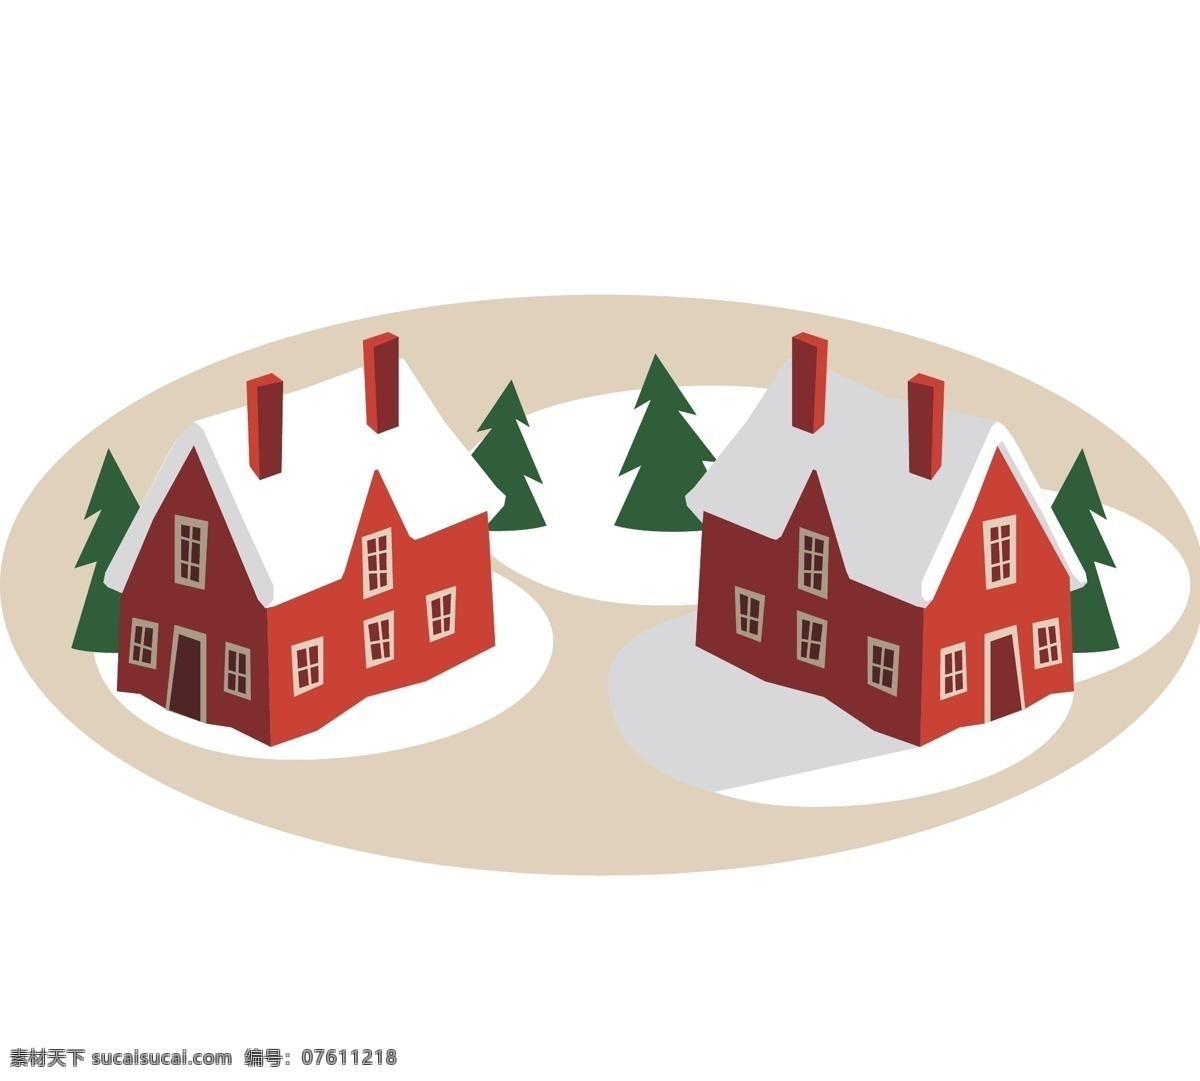 圣诞 元素 圣诞树 雪 房子 矢量 红房子 雪房子 树